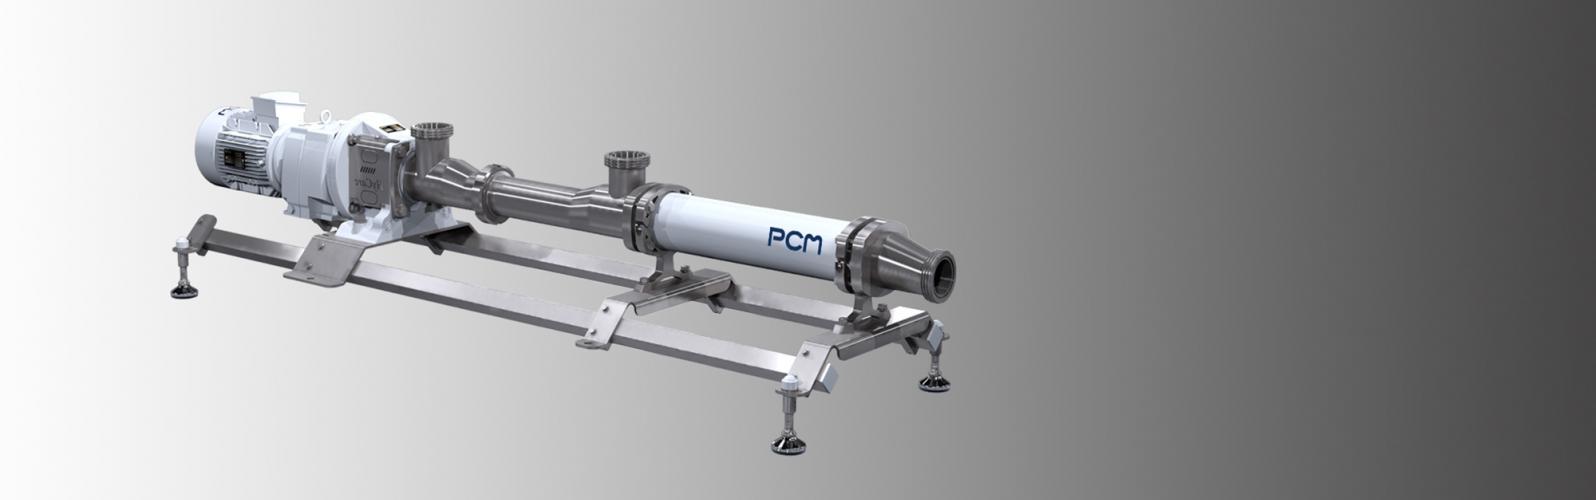 PCM ist ein führender Hersteller von Pump-, Dosier-, Misch-, und Abfüllsystemen